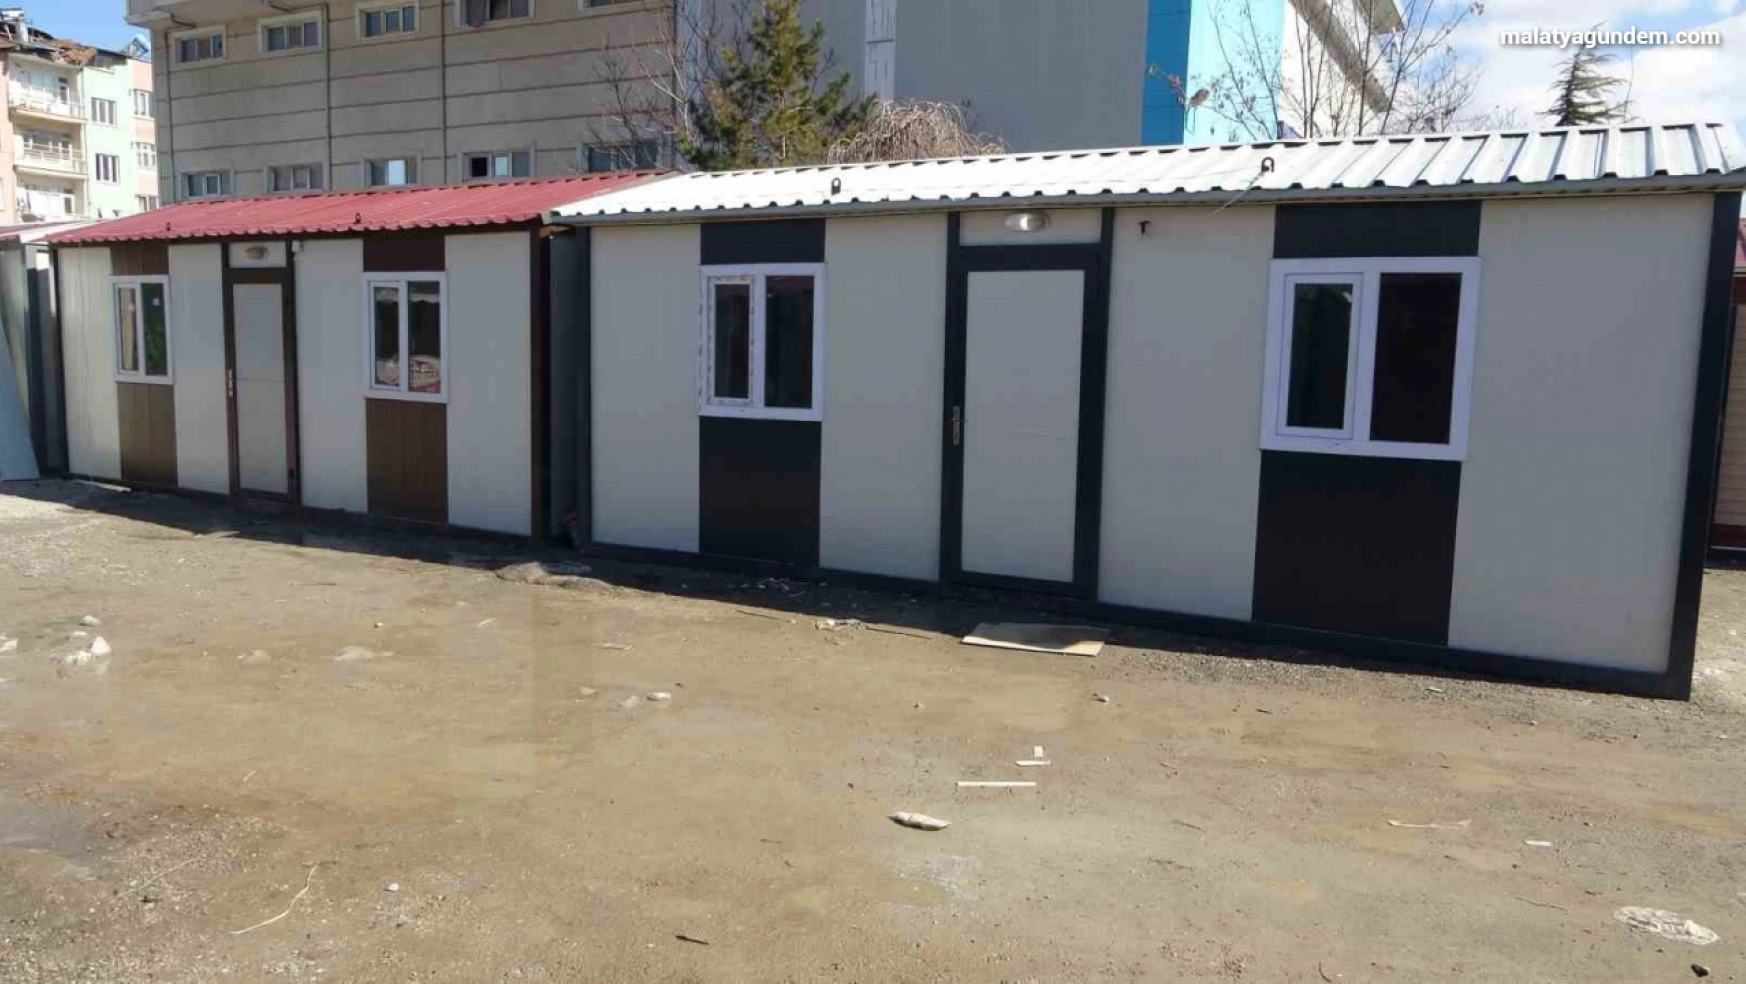 Deprem bölgesinde fiyatları 65 ila 130 bin TL arasında değişen konteyner evler yok satıyor